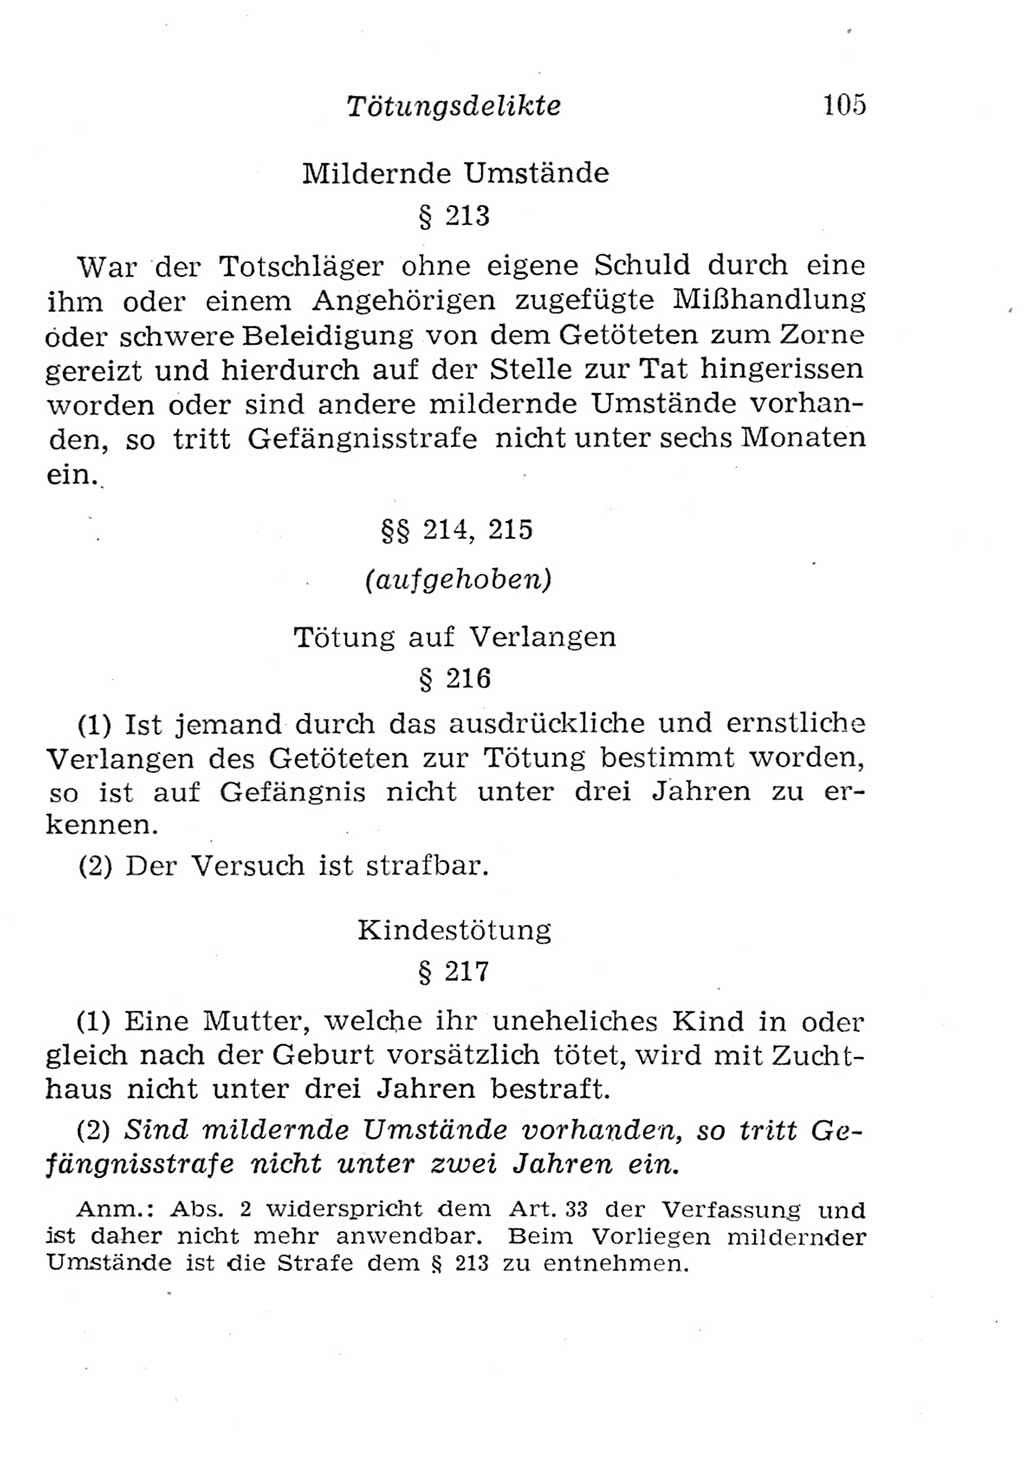 Strafgesetzbuch (StGB) und andere Strafgesetze [Deutsche Demokratische Republik (DDR)] 1957, Seite 105 (StGB Strafges. DDR 1957, S. 105)